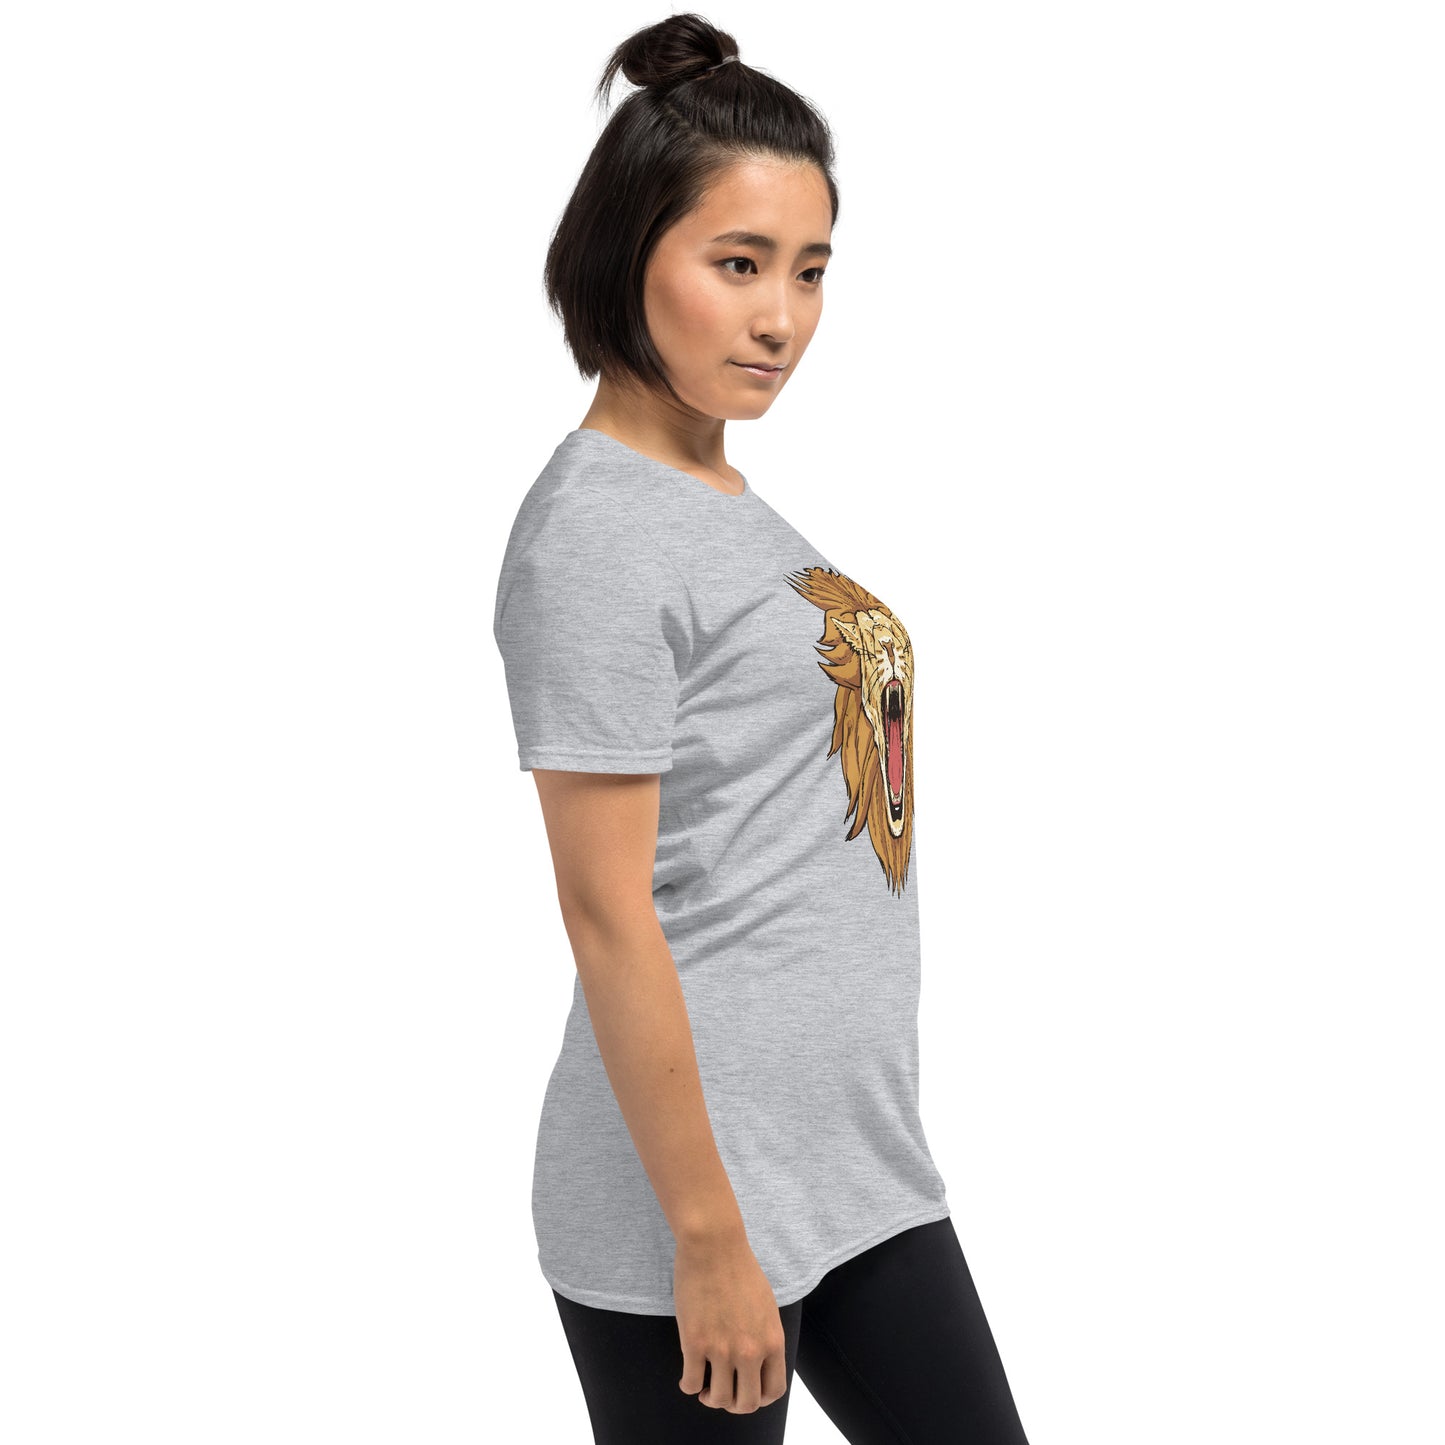 Lion Roar Short-Sleeve Unisex T-Shirt